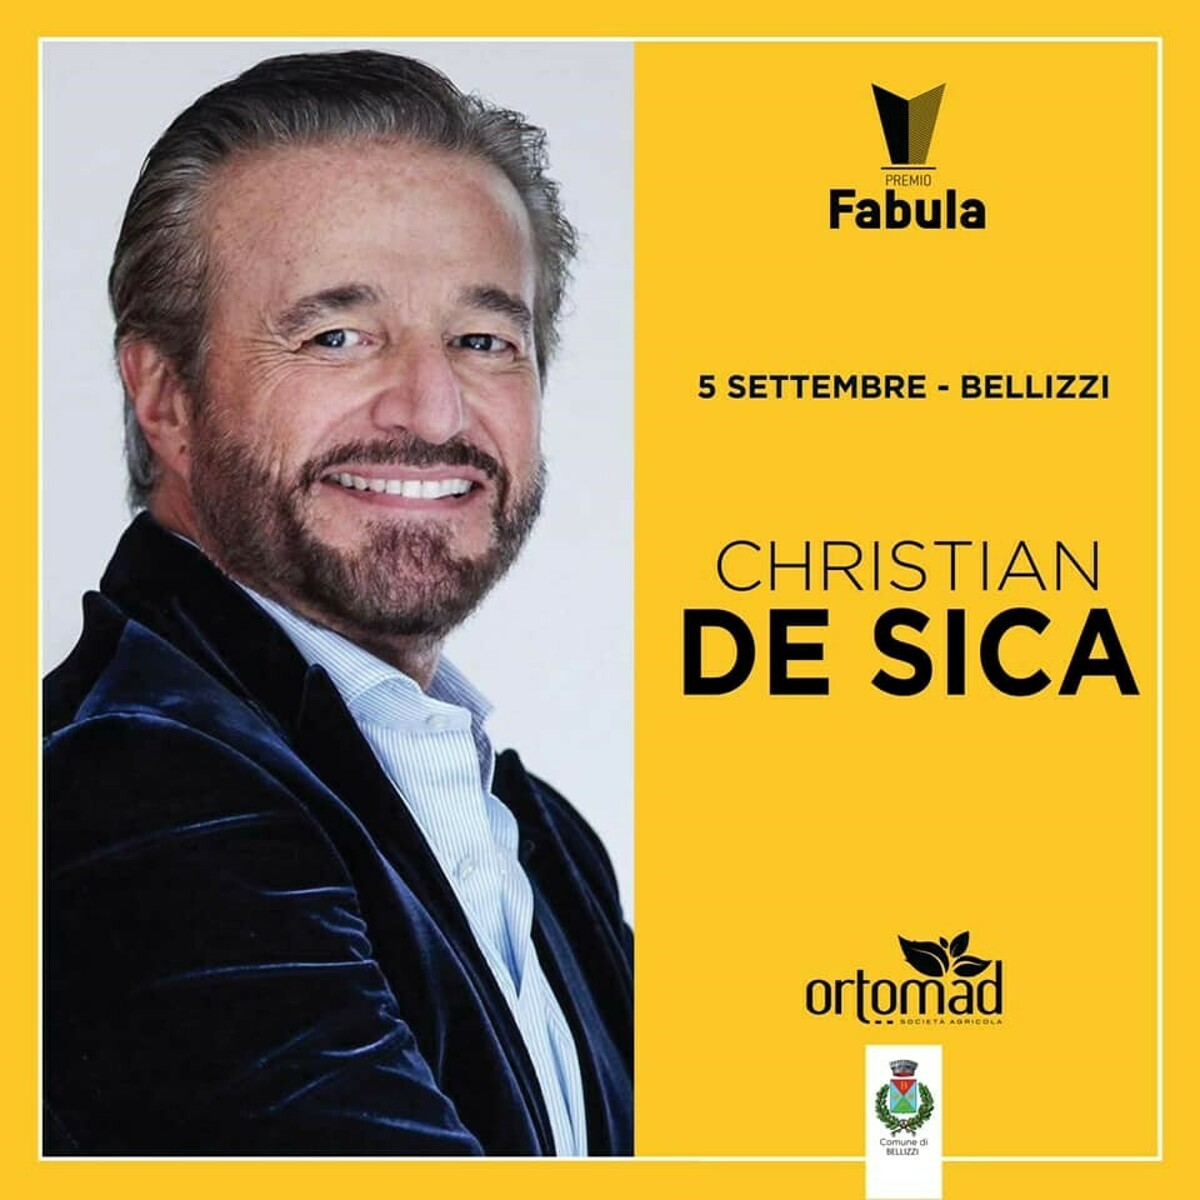 Premio Fabula: a Bellizzi arriva Christian De Sica